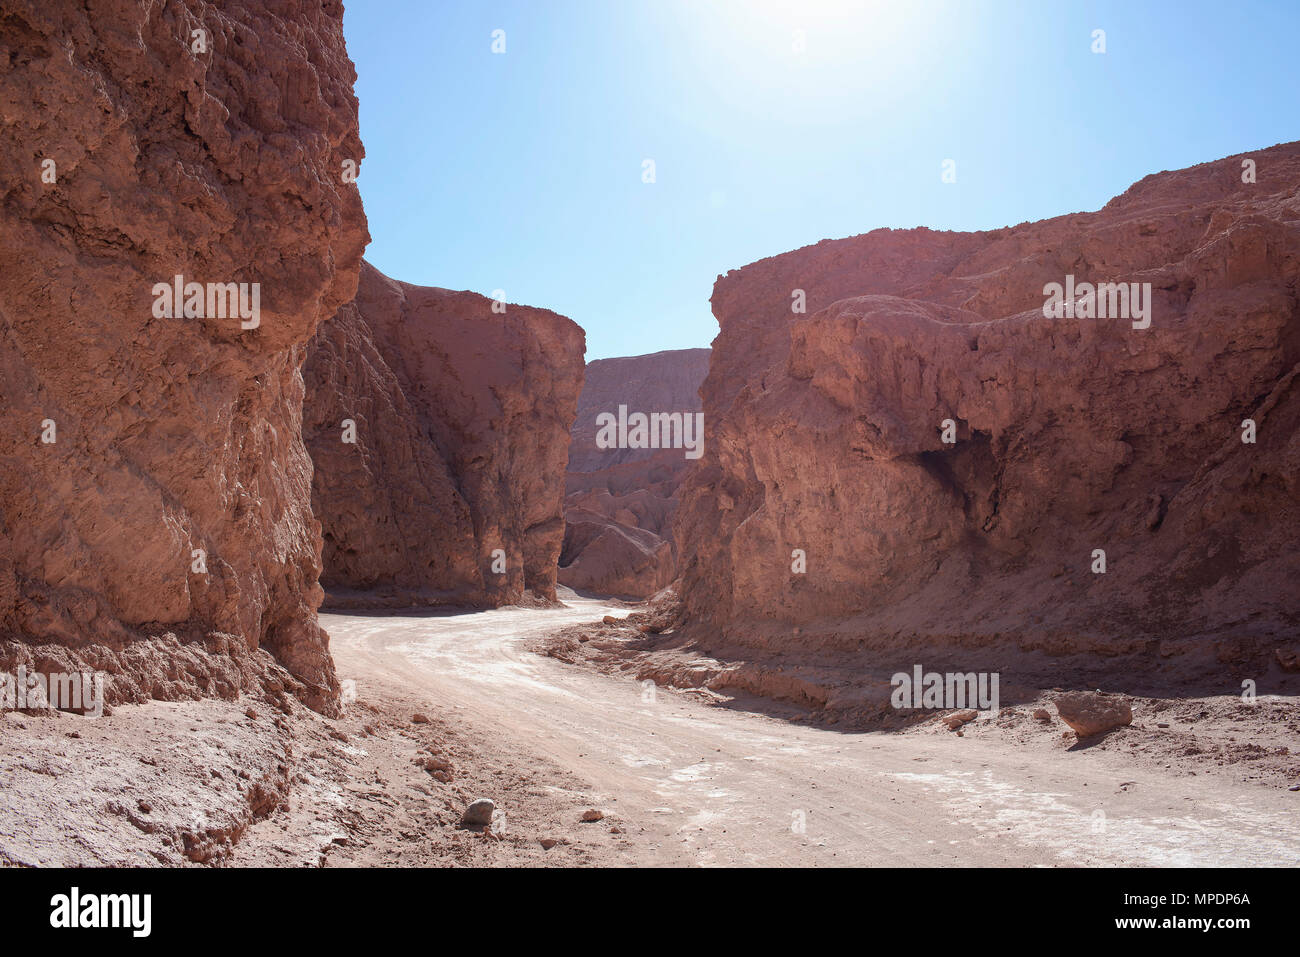 La route en zigzag dans la Death Valley (vallée de la Muerte OU Valle de Marte) dans la région de désert d'Atacama, au Chili. Banque D'Images